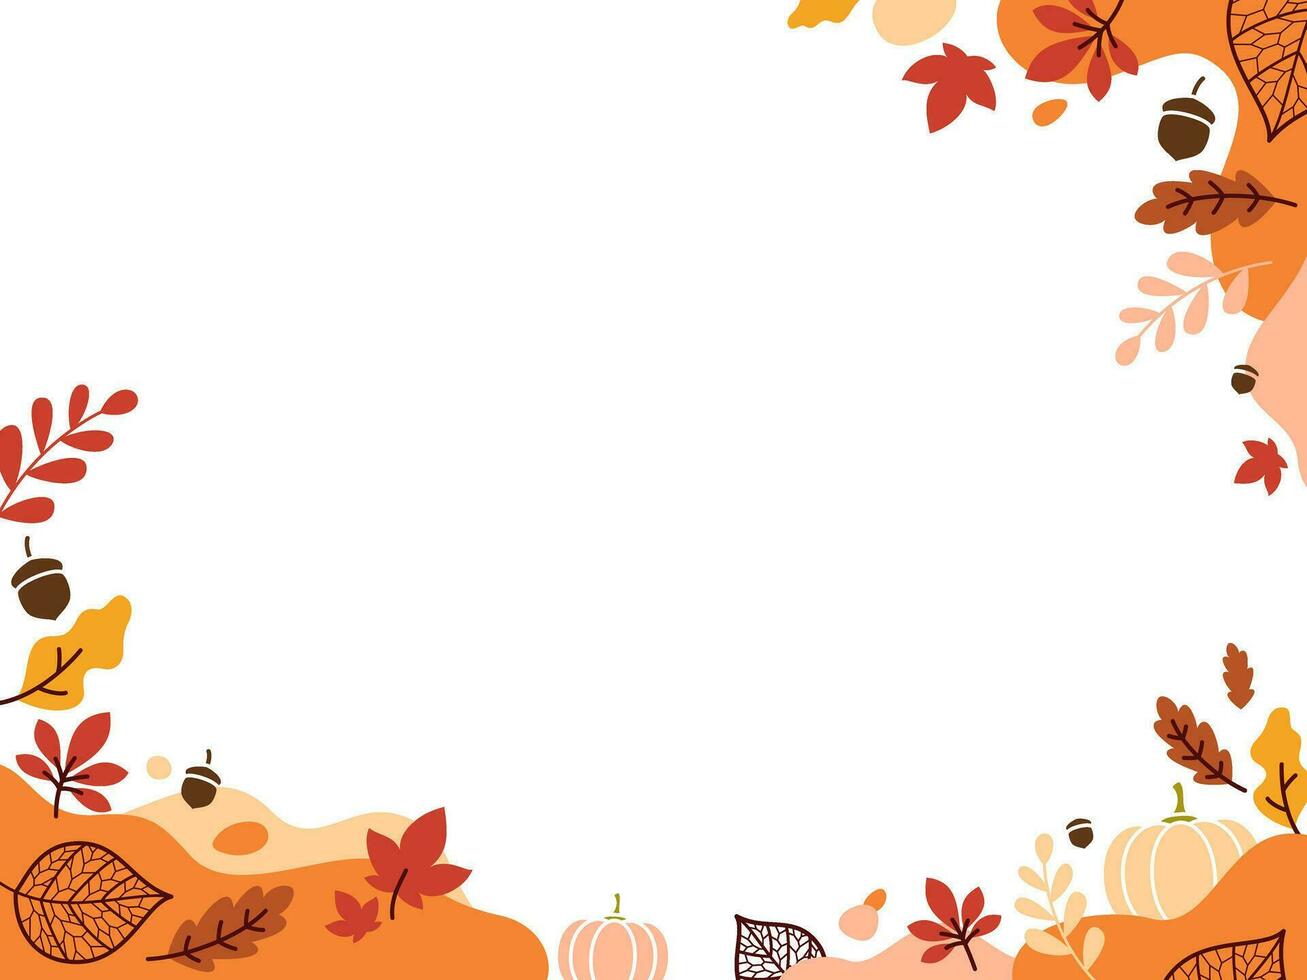 Seasonal Autumn Fall Illustration vector